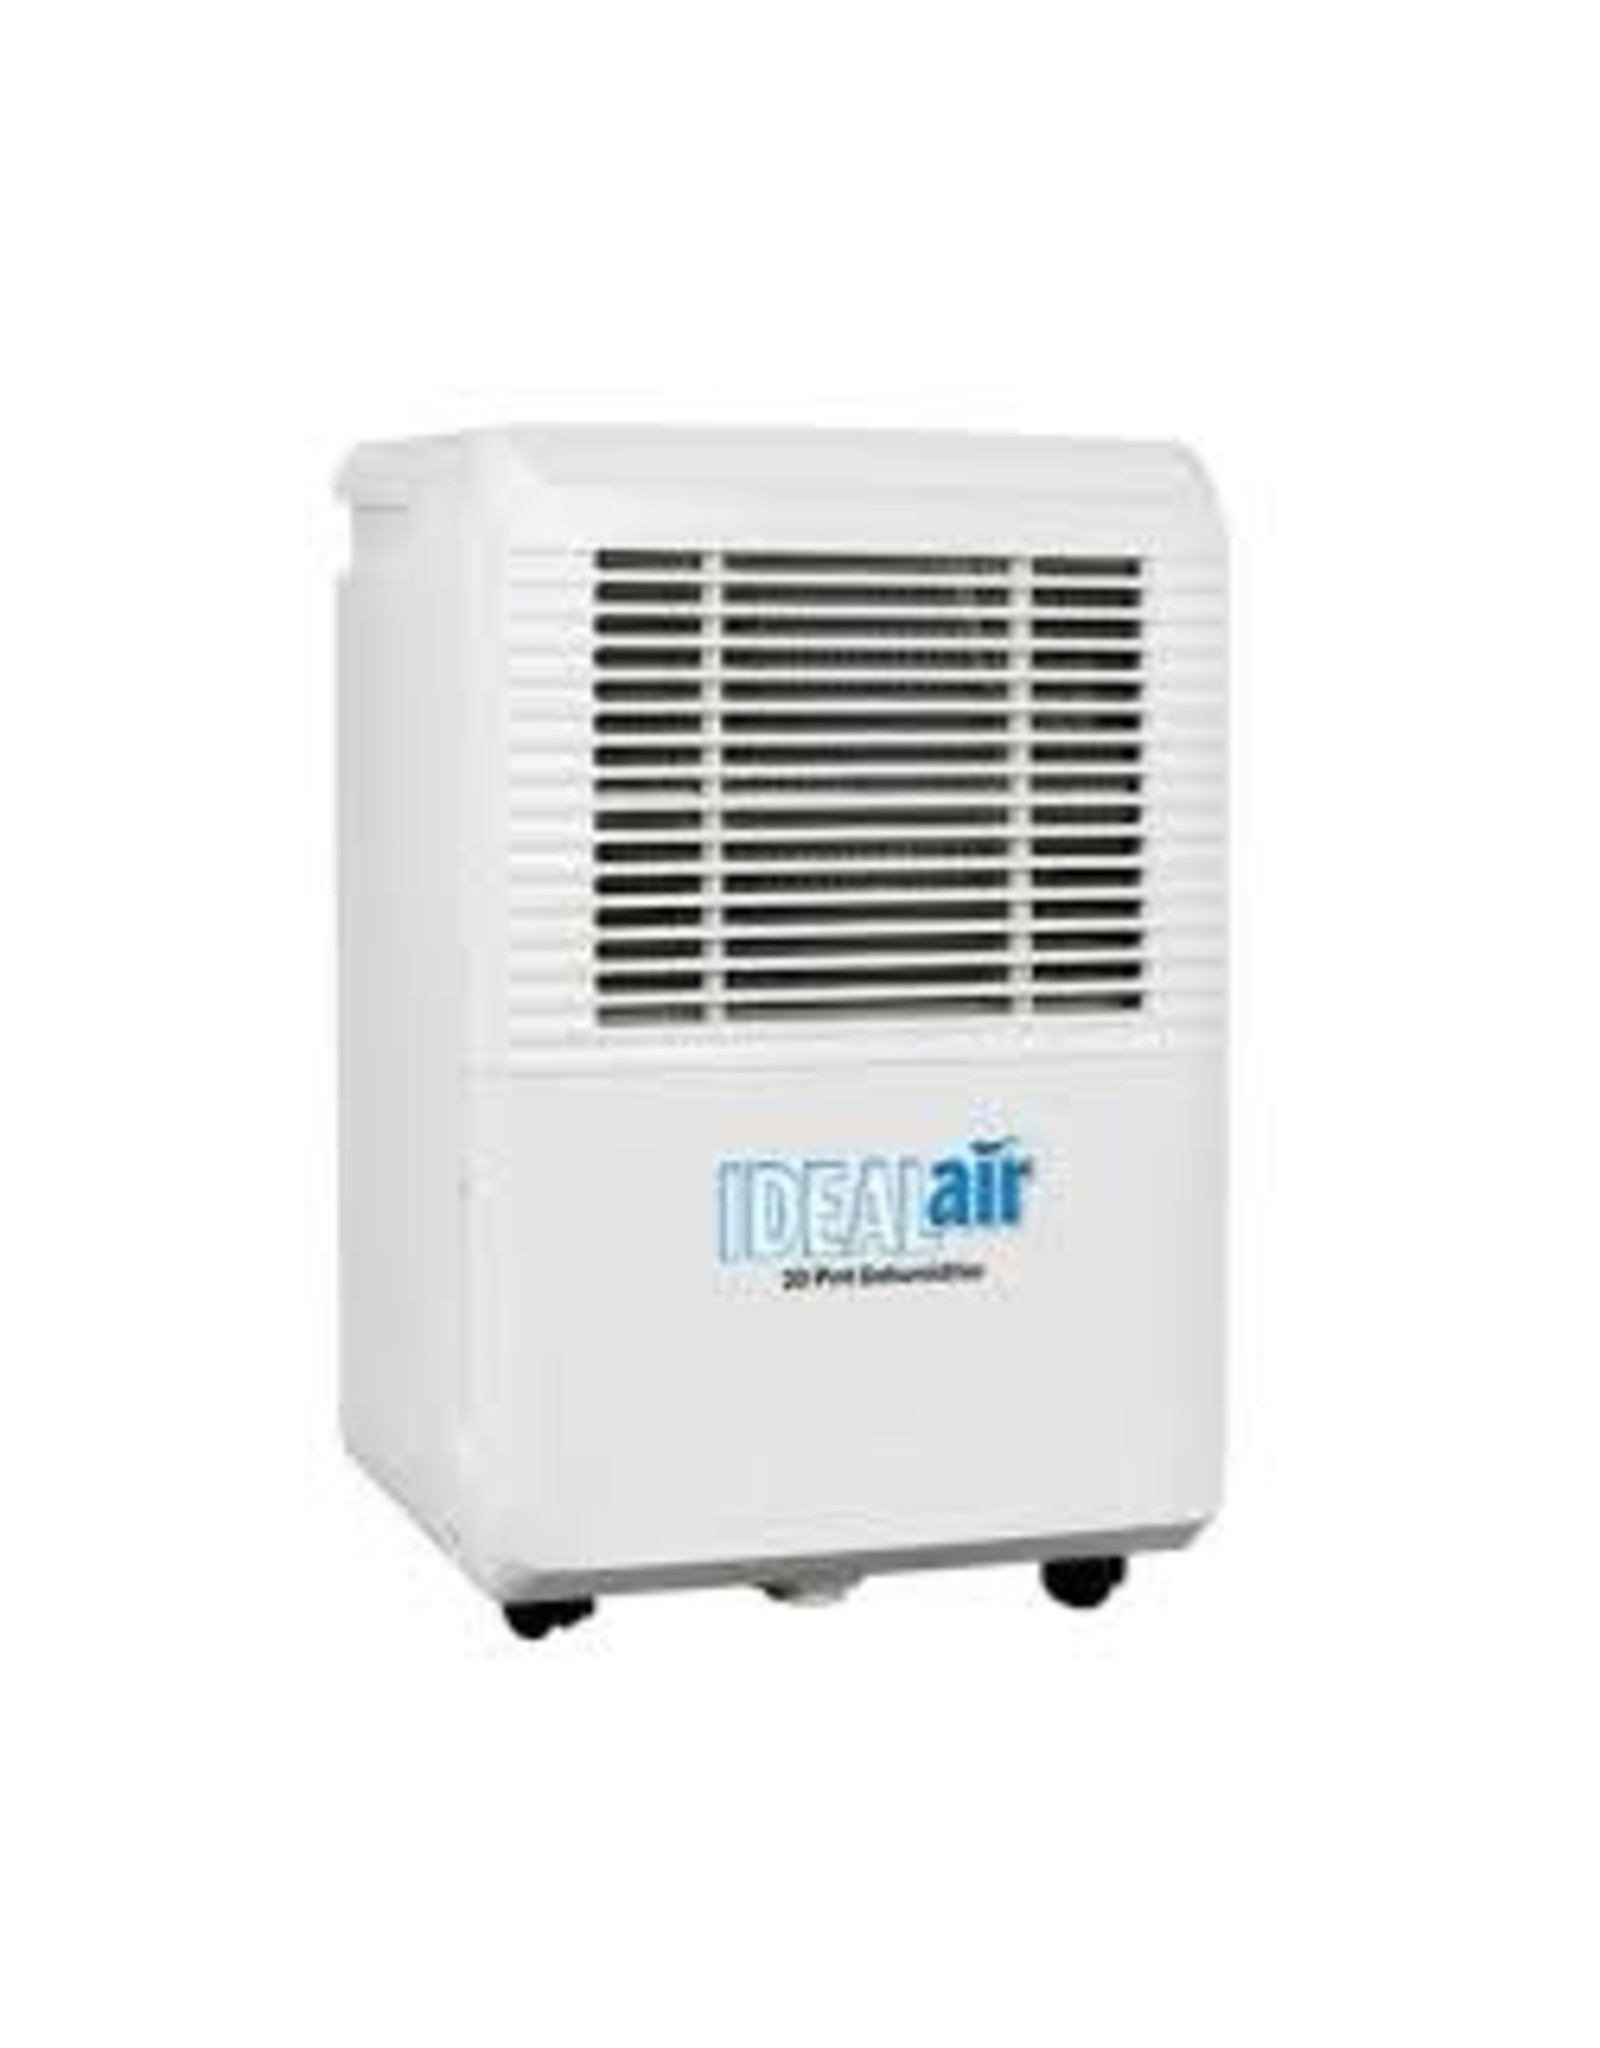 Ideal Air Ideal-Air Dehumidifier 22 Pint